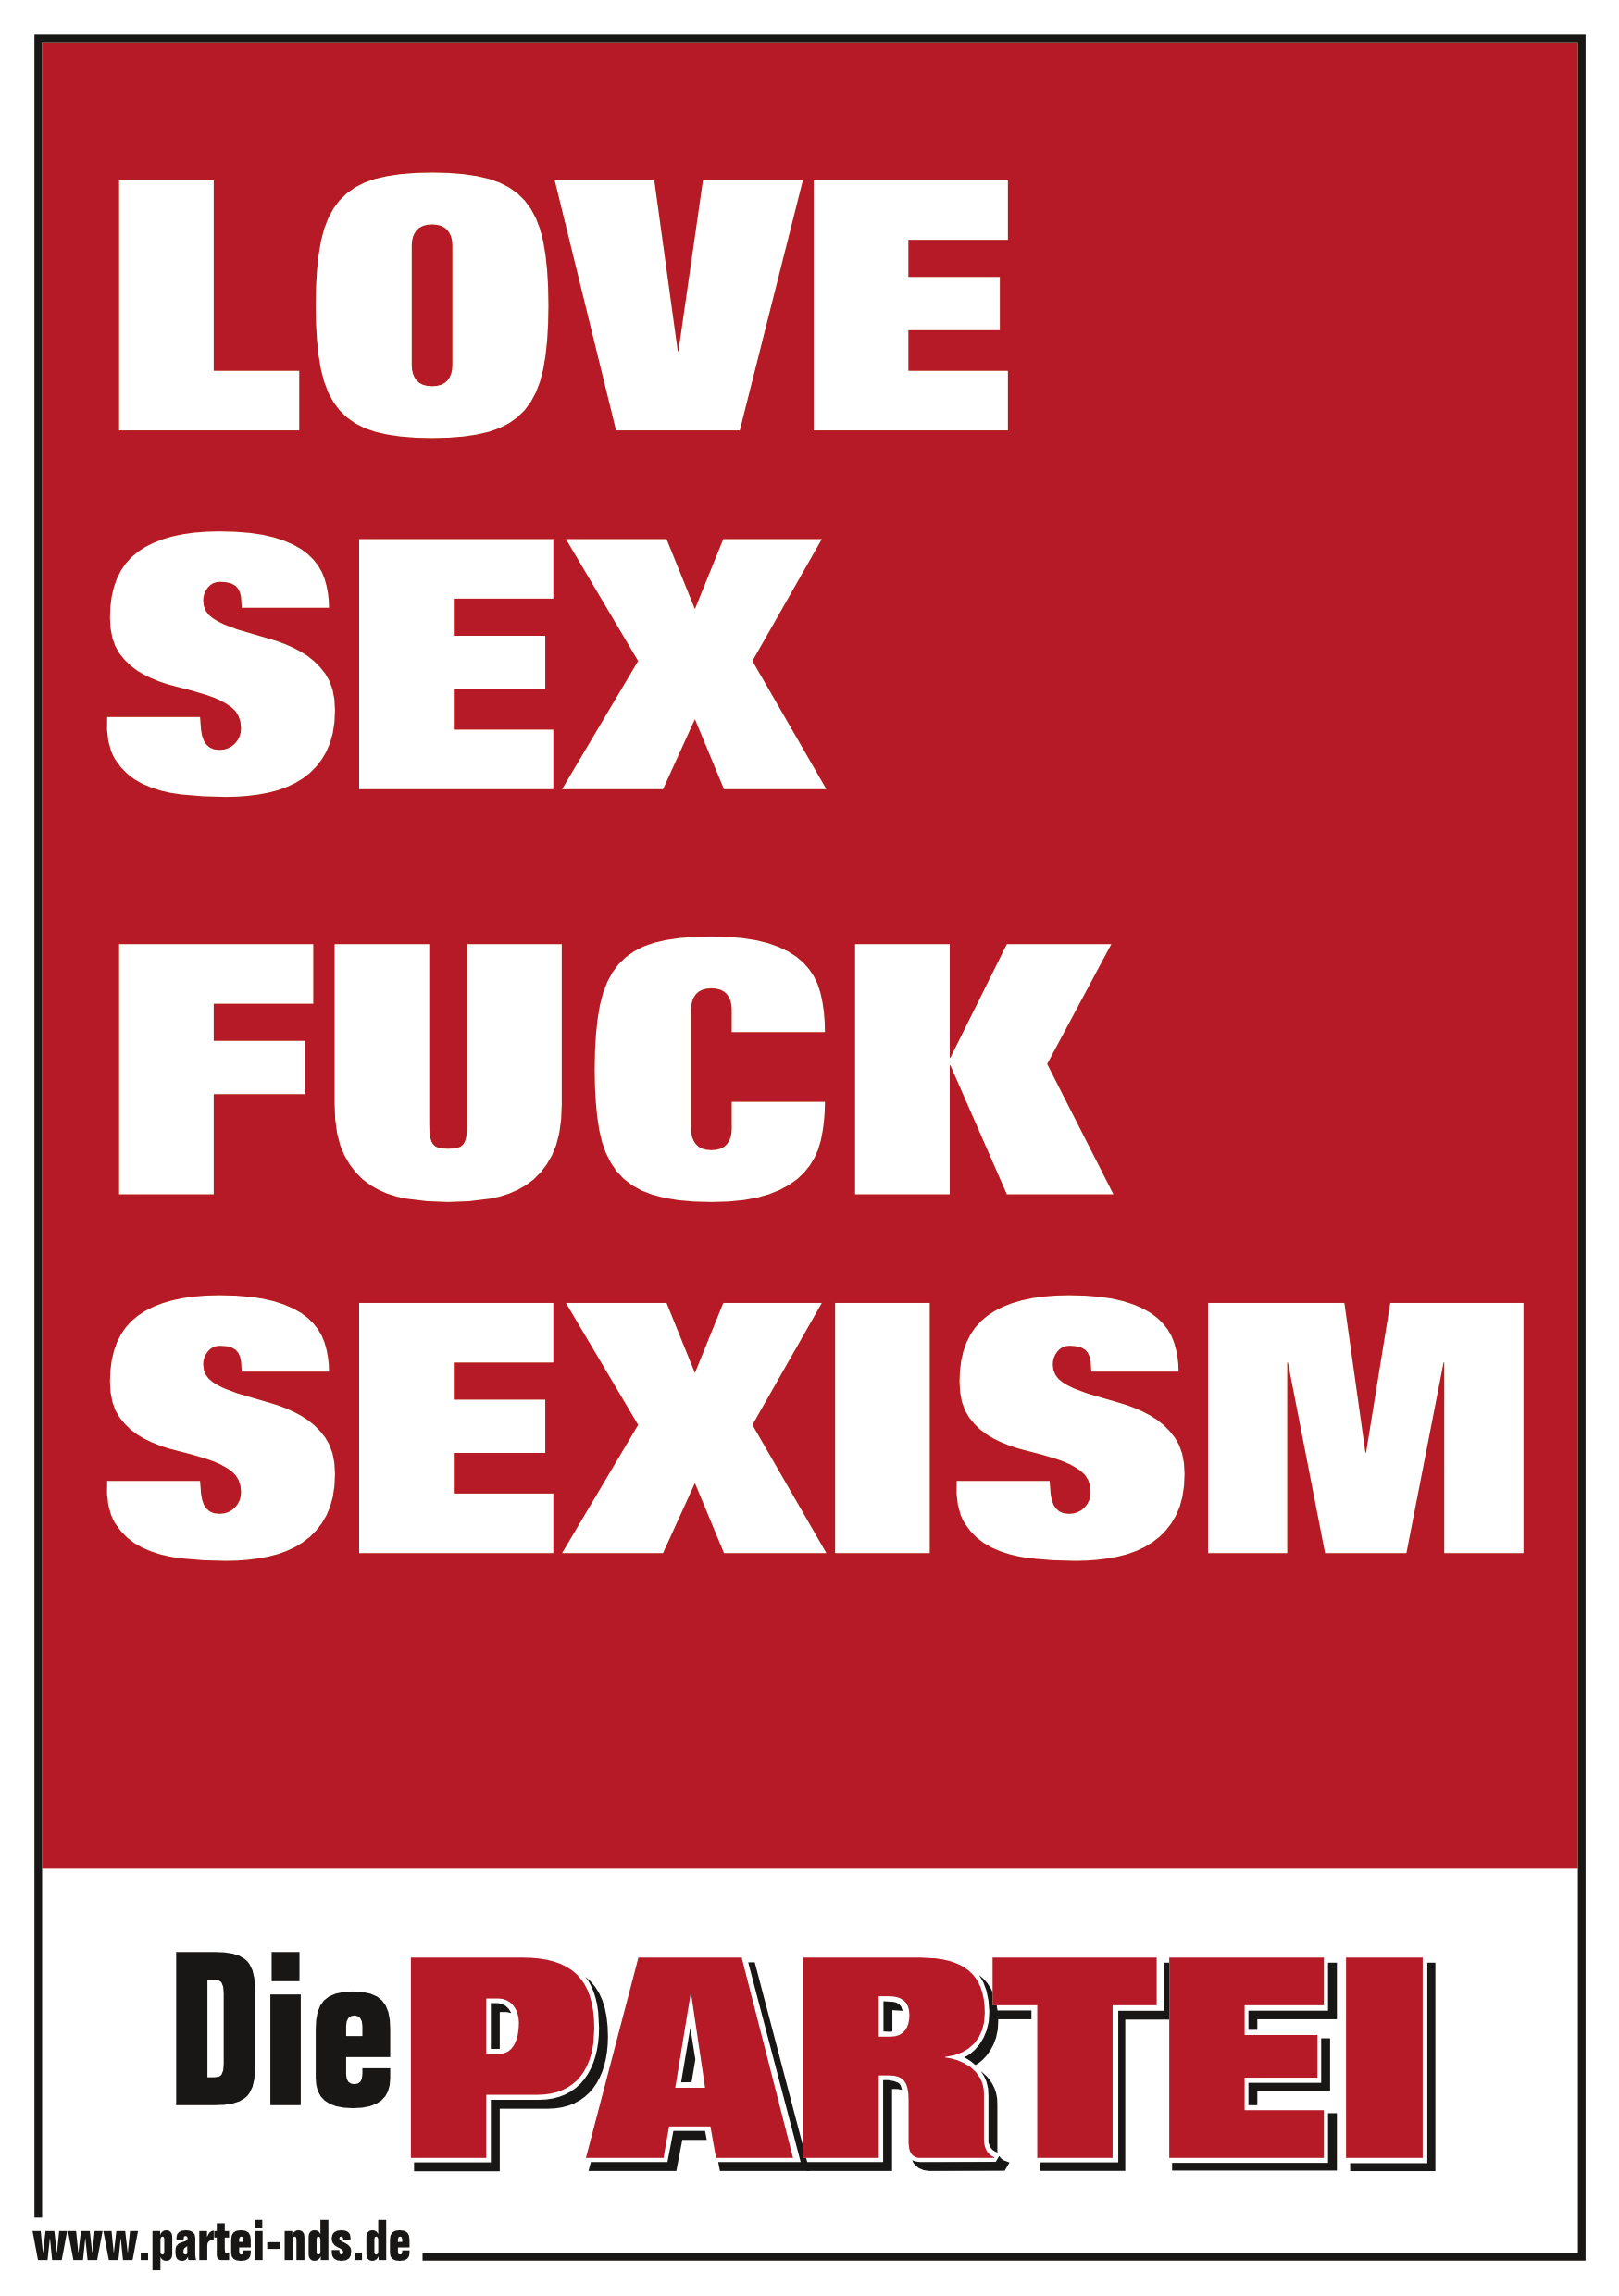 LOVE SEX, FUCK SEXISM